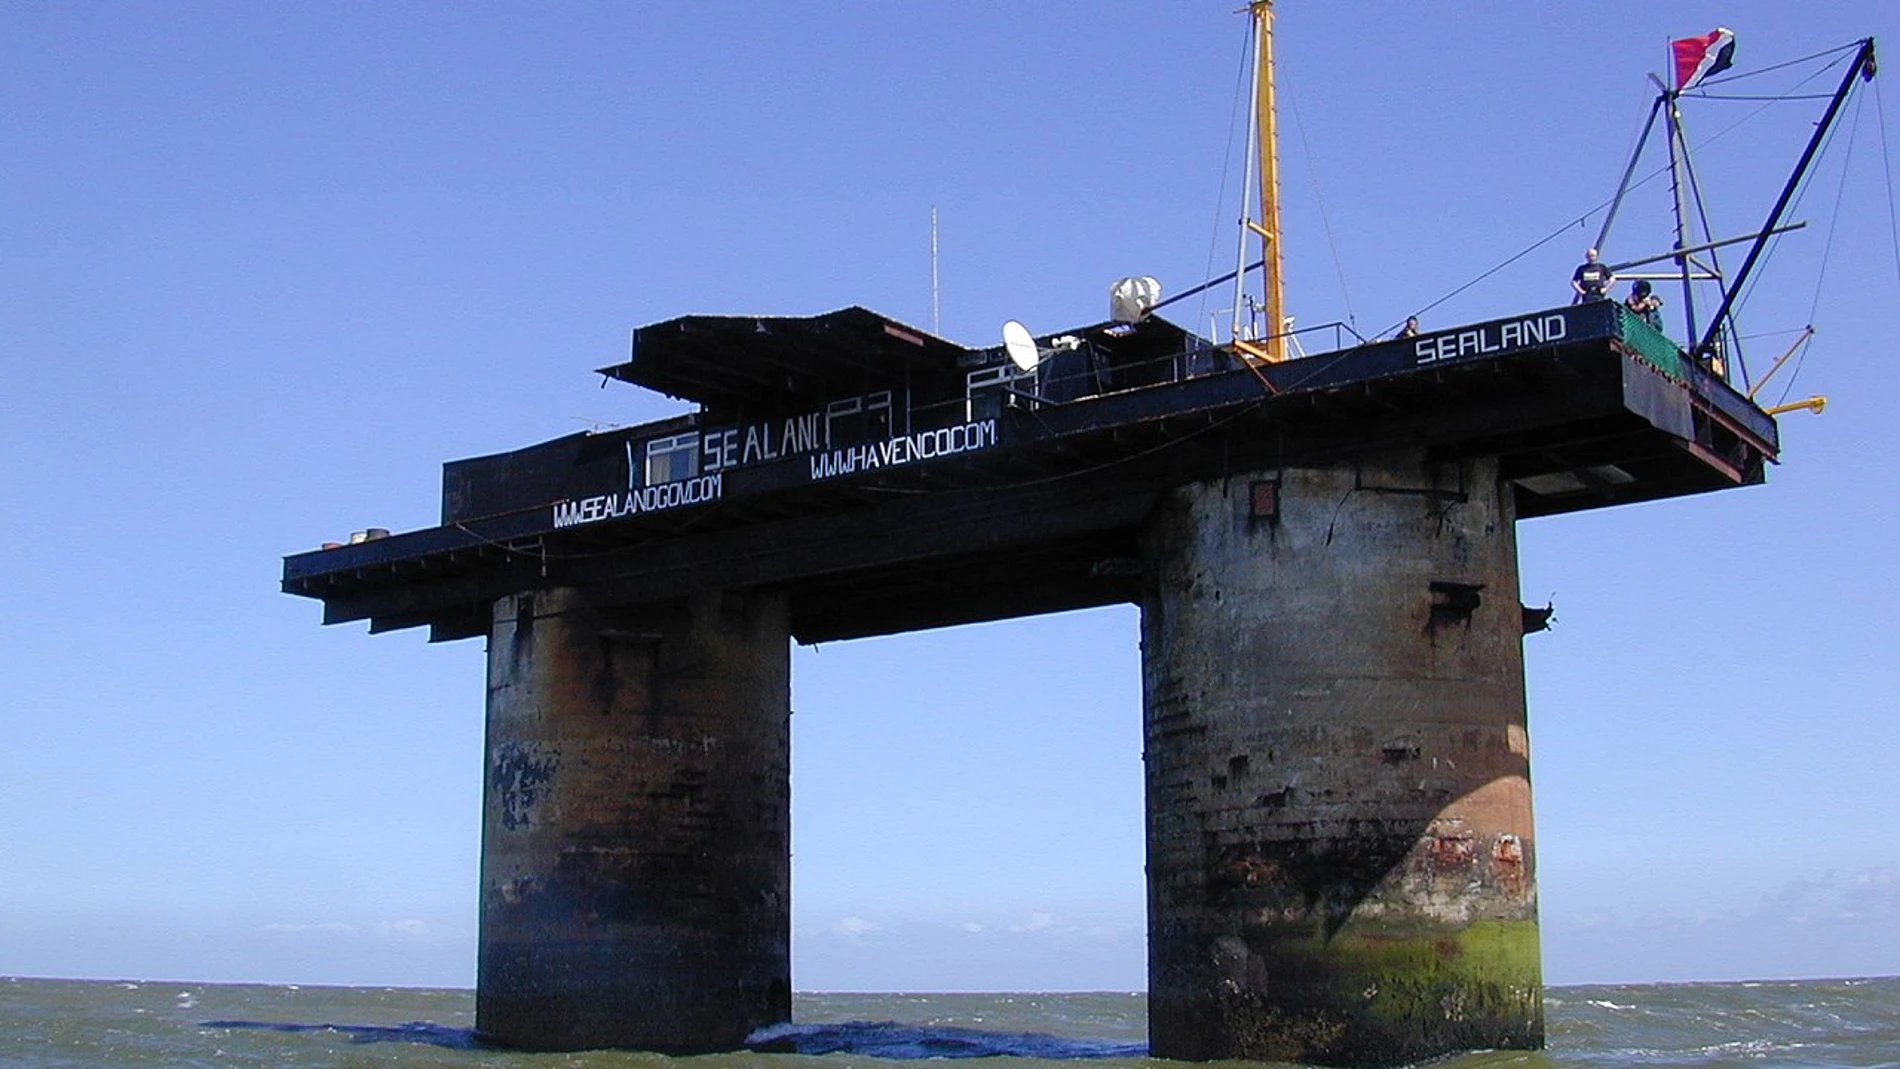 Plataforma marítima HM Fort Roughs, sobre la que se levantó el Principado de Sealand